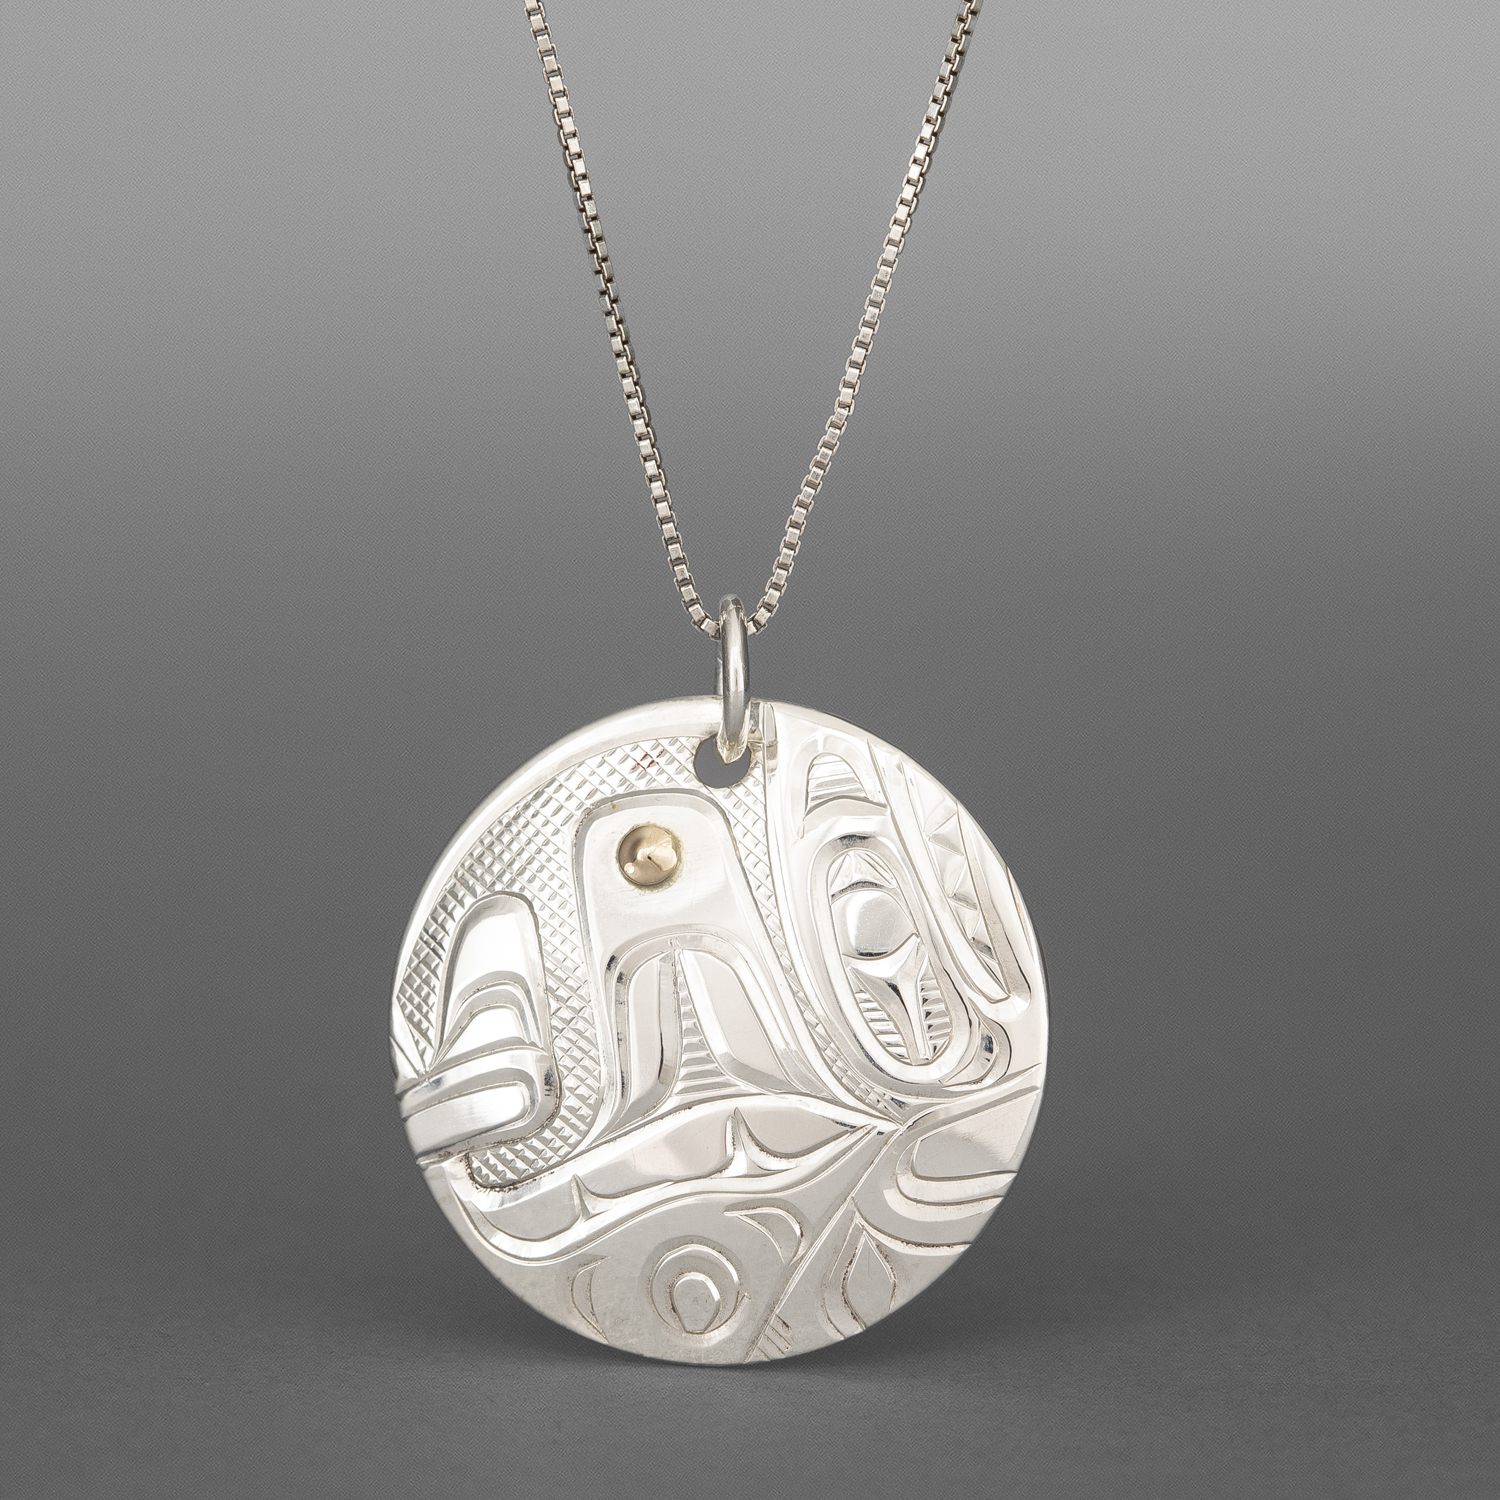 Killerwhale Pendant
Corrine Hunt
Kwakwaka'wakw/Tlingit
Sterling silver, 14k gold
1" dia.
$295